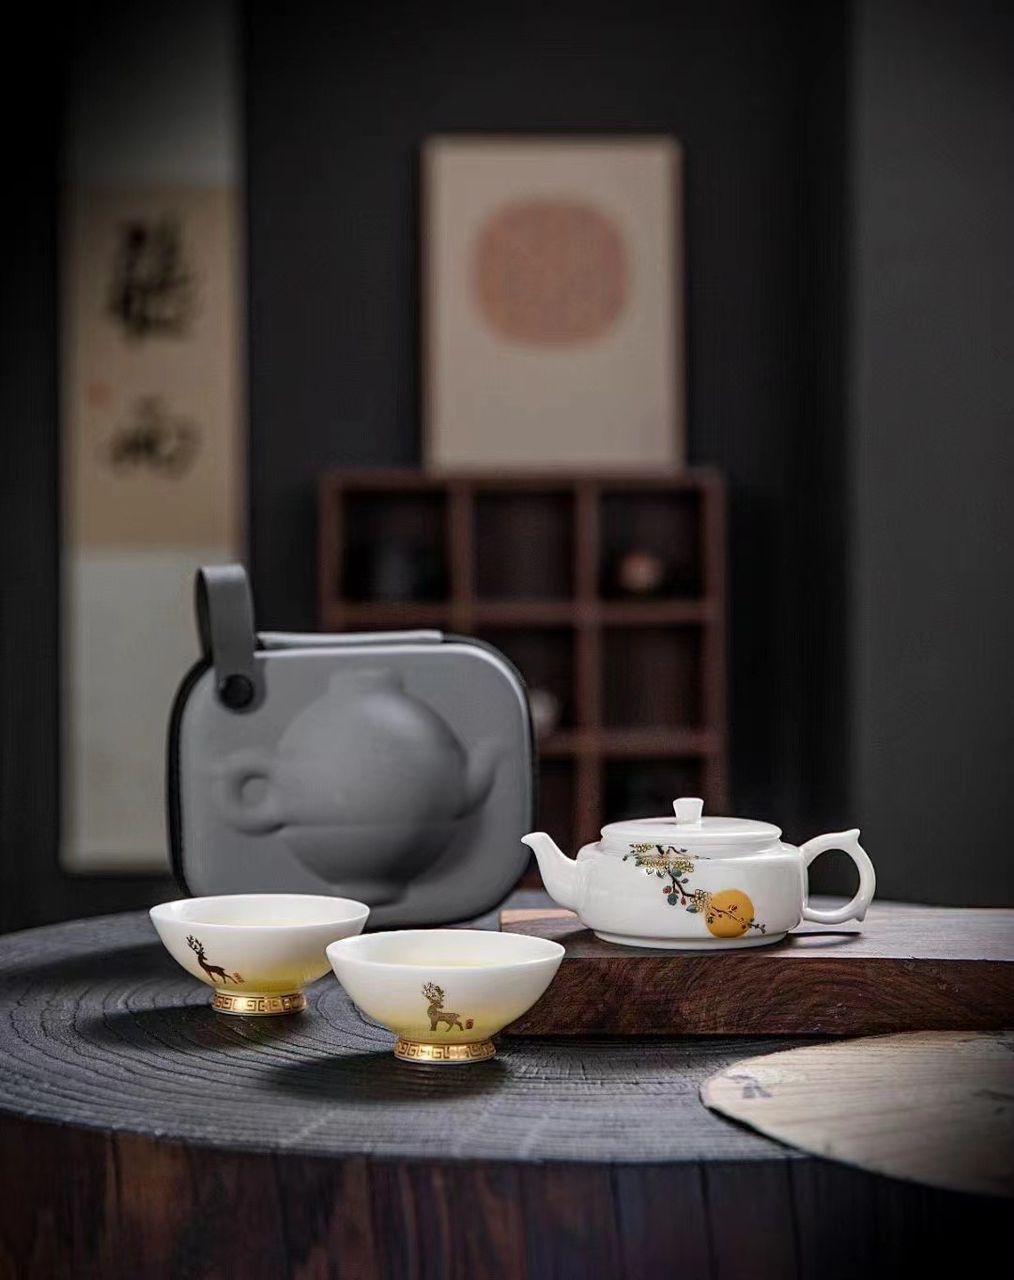 羊脂玉瓷旅行茶具 Traveller's Tallow Jade Porcelain Tea Set